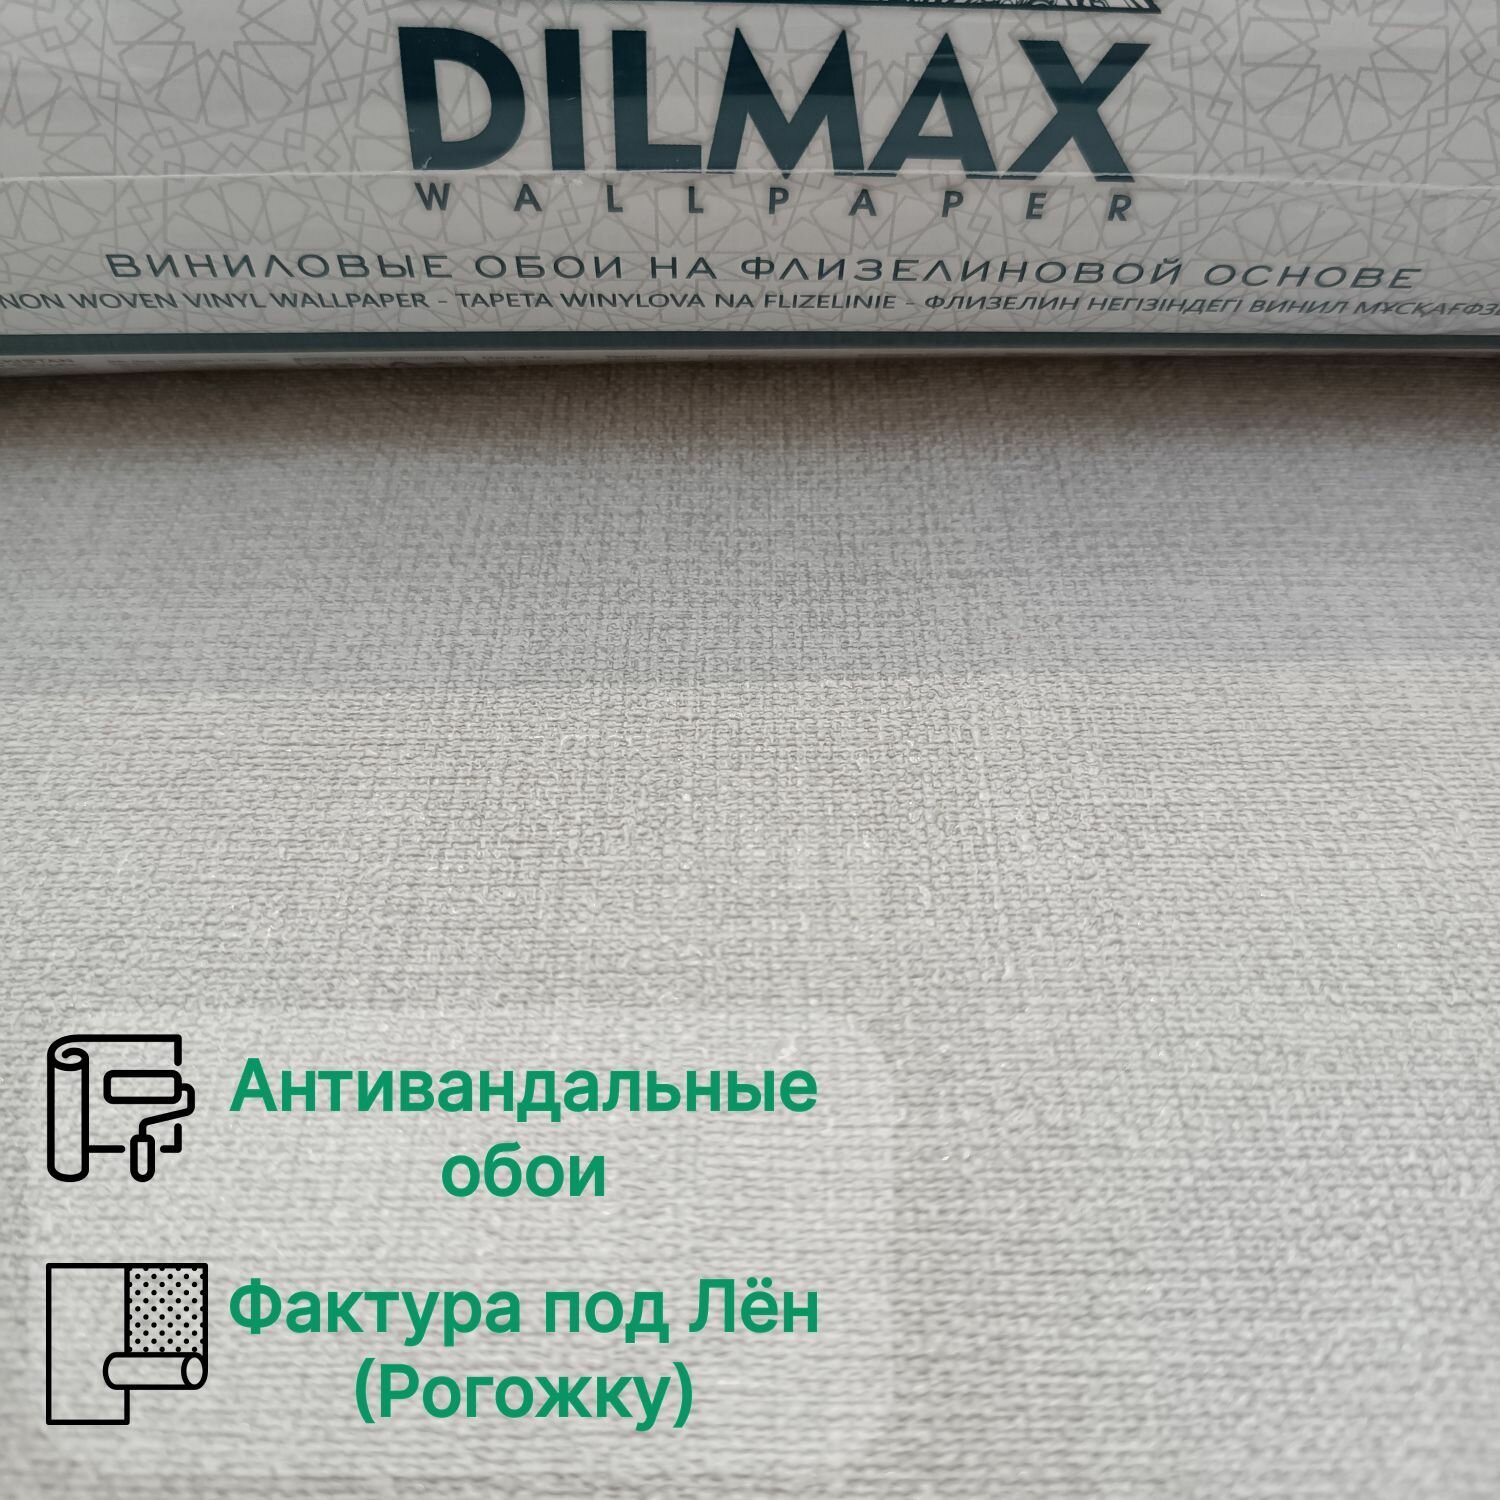 Обои однотонные метровые с фактурой под лен (рогожку) виниловые на флизелиновой основе 1.06м*10.05м Dilmax арт. 7556-03 (NBS) Узбекистан